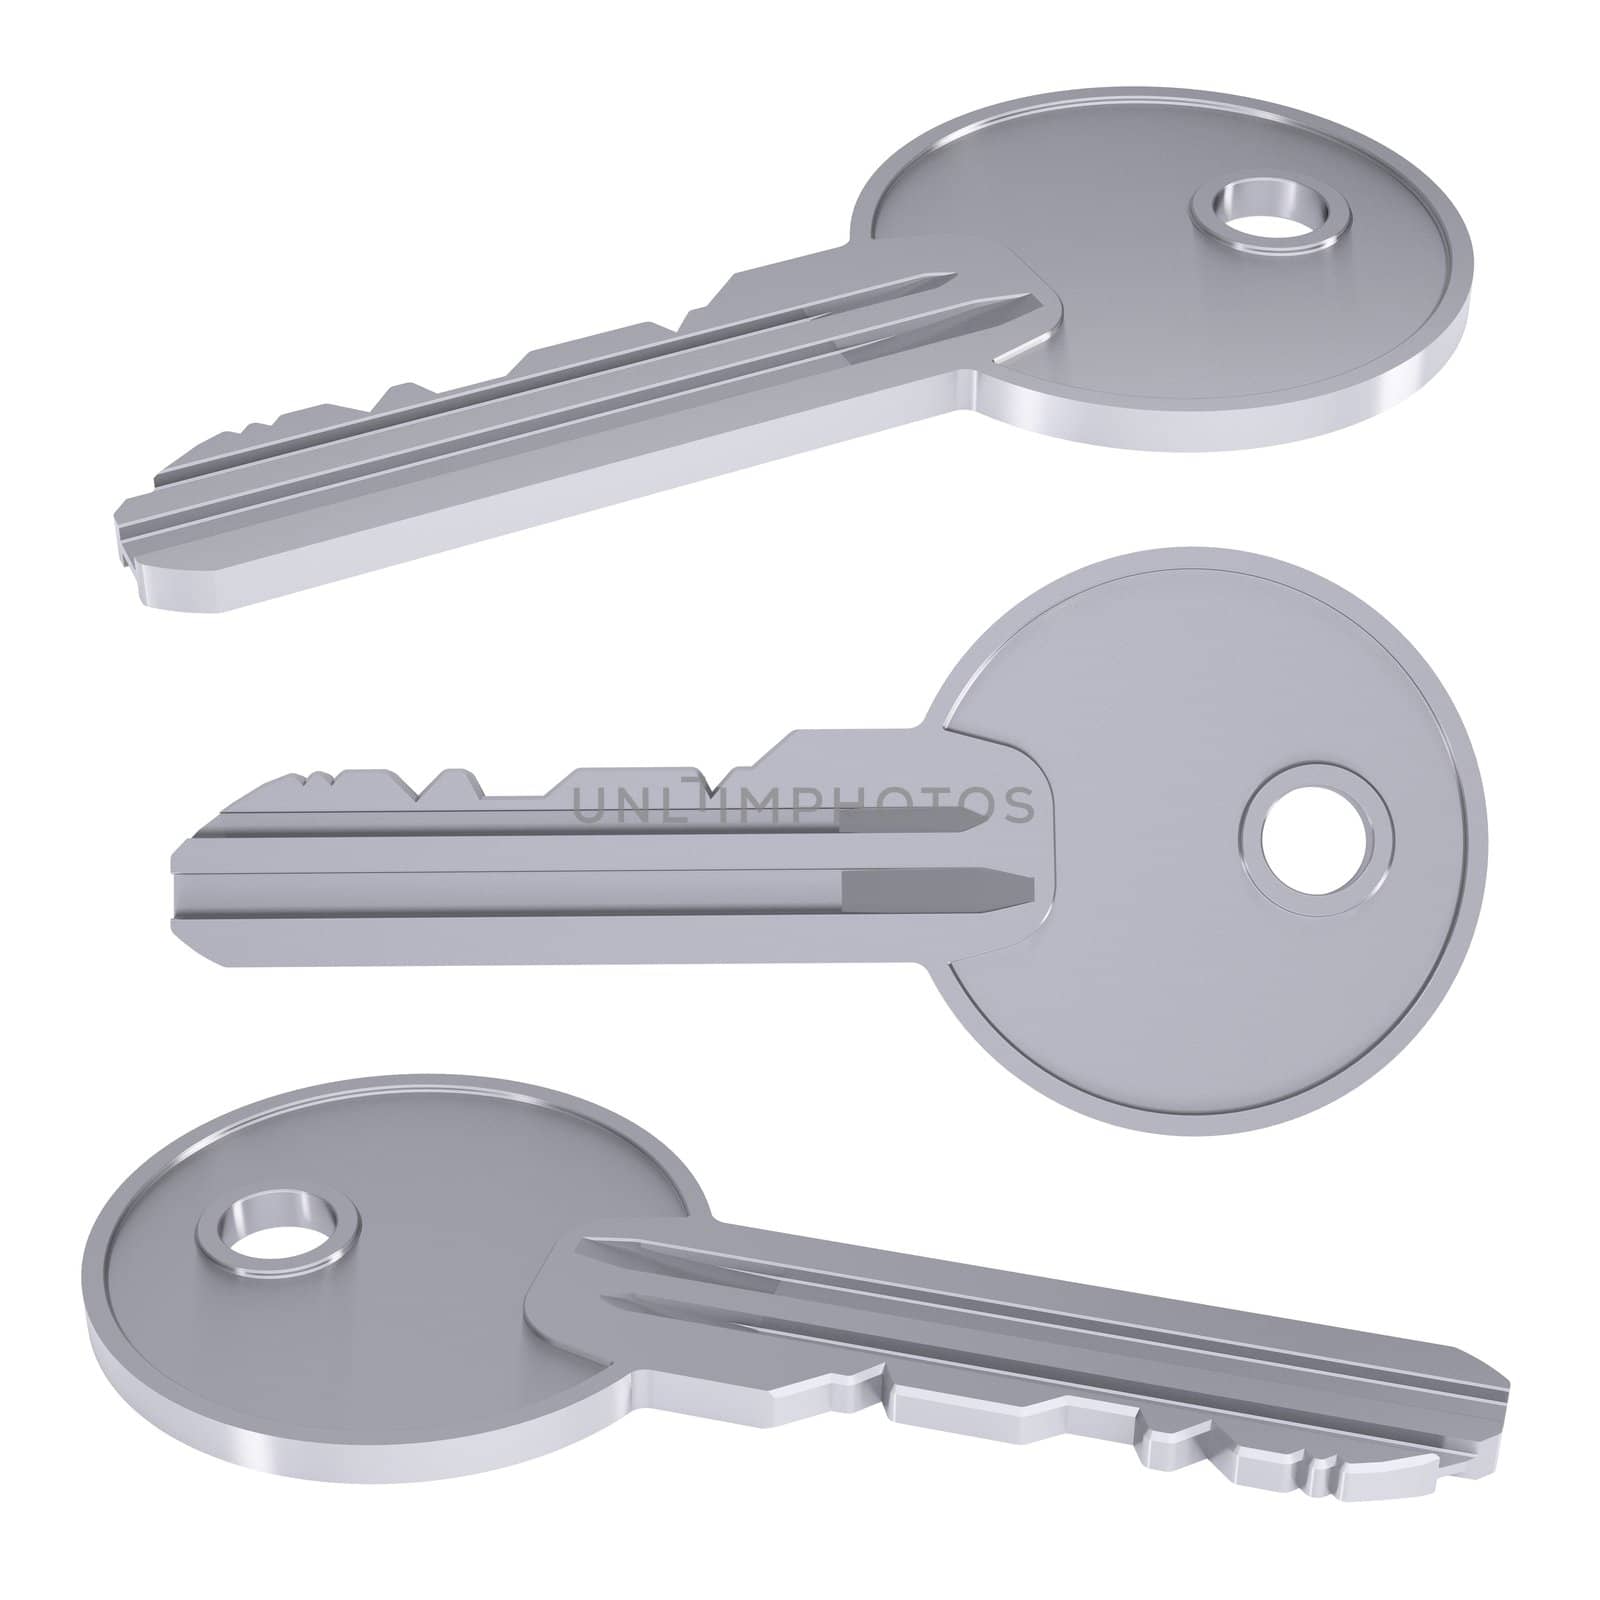 Metal key by cherezoff